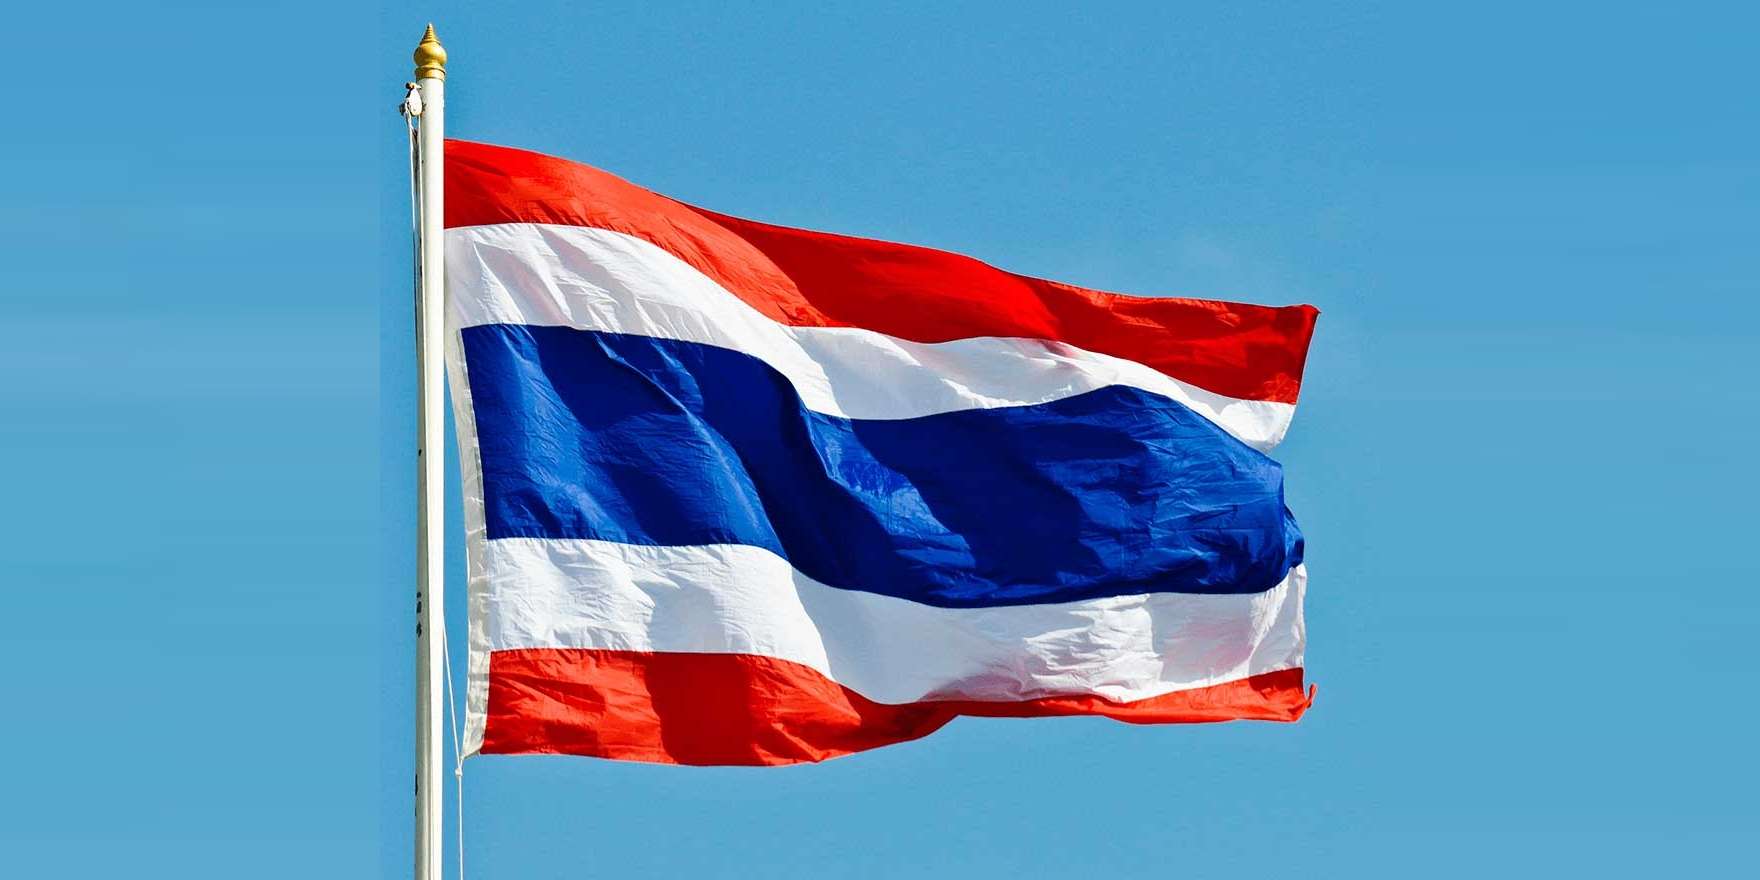 флаг и герб тайланда